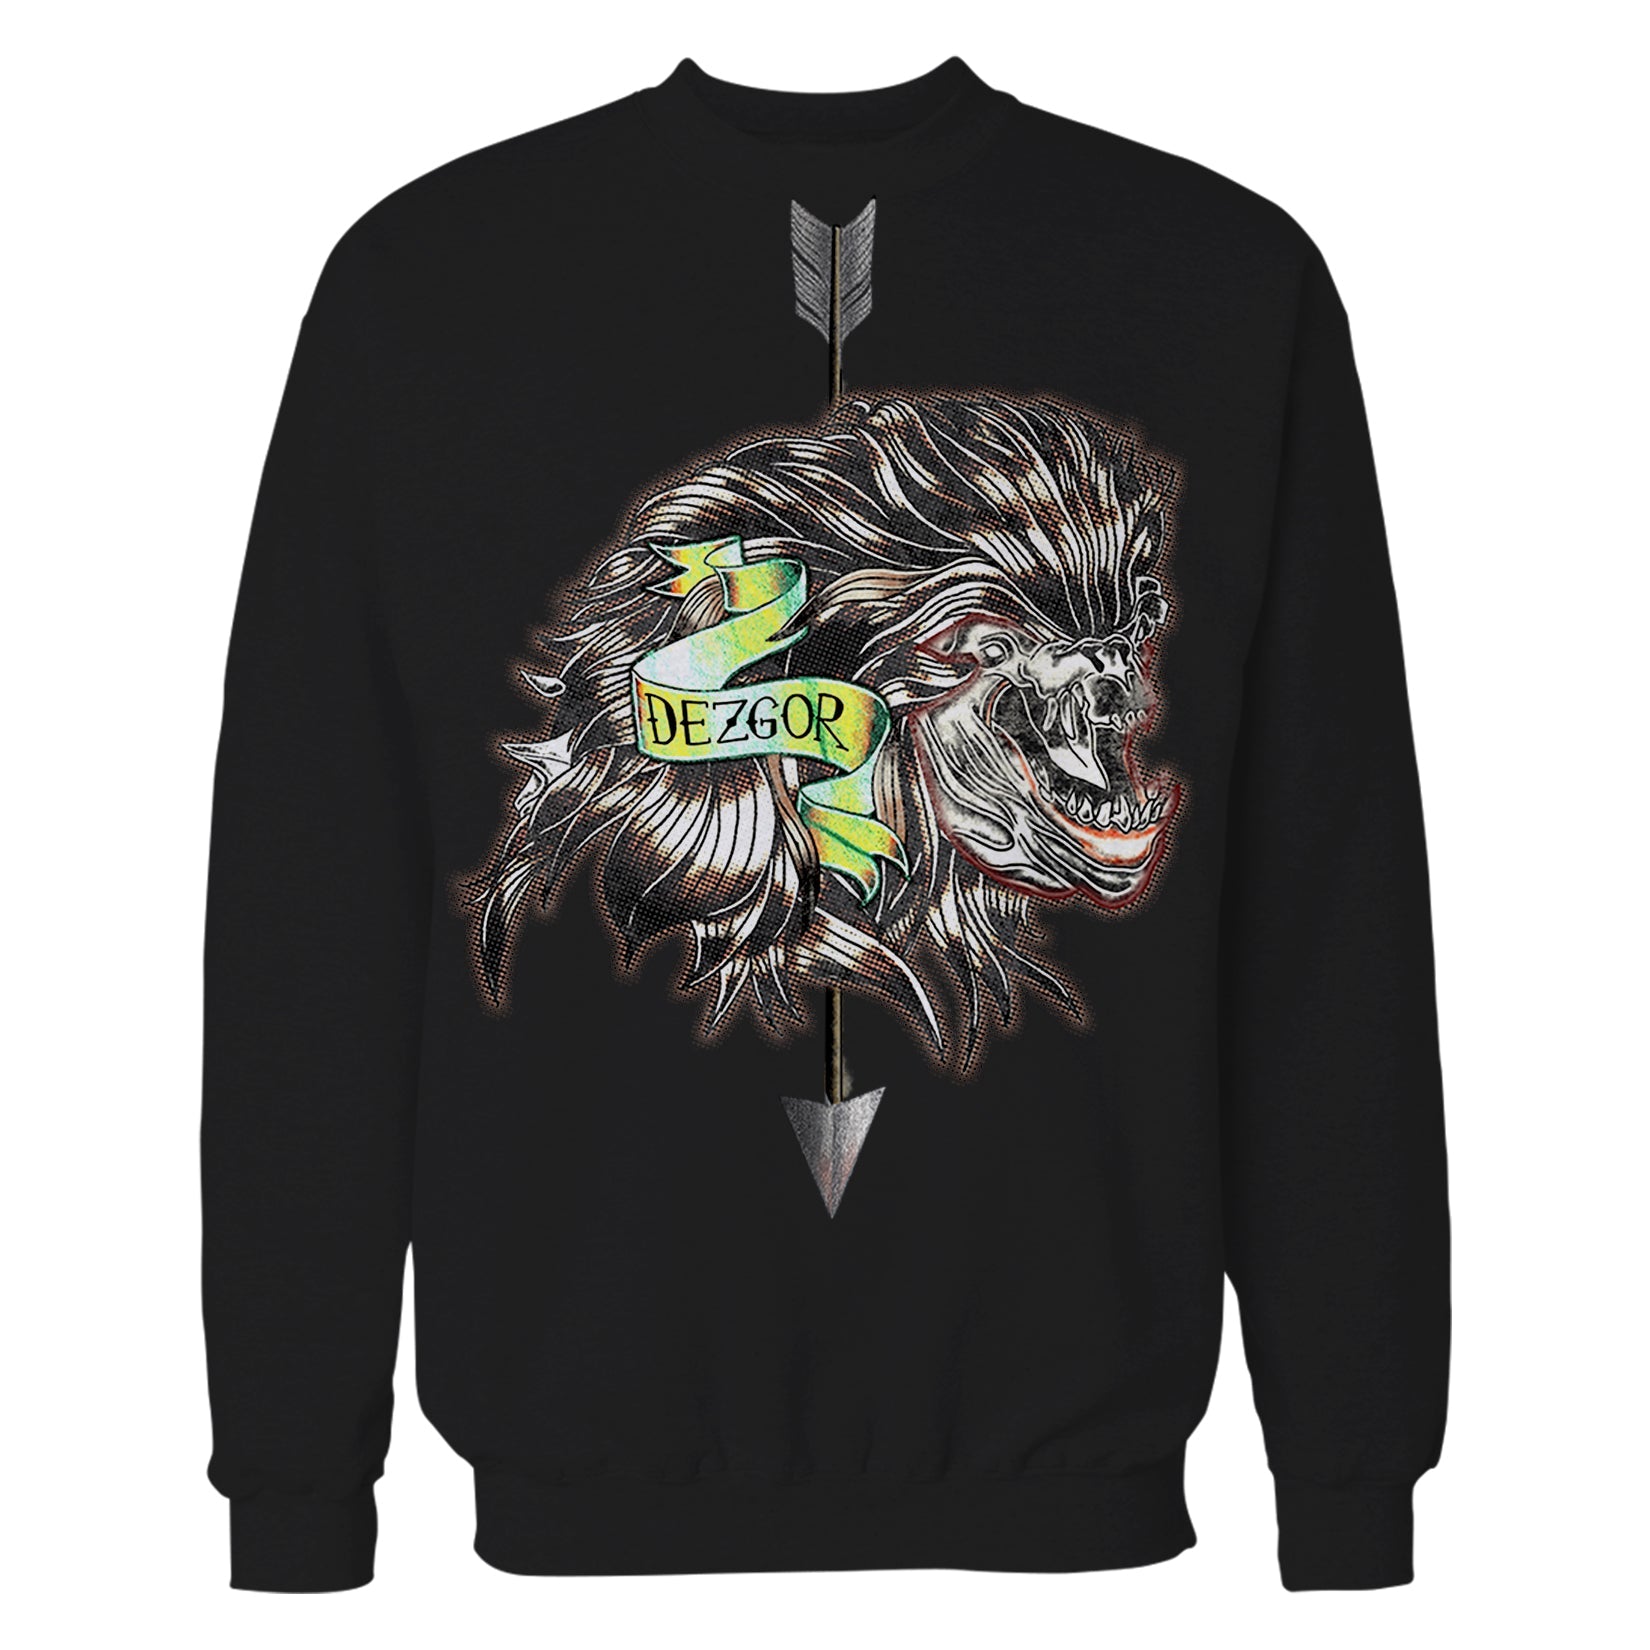 The Witcher Book of Beasts Dezgor Official Sweatshirt